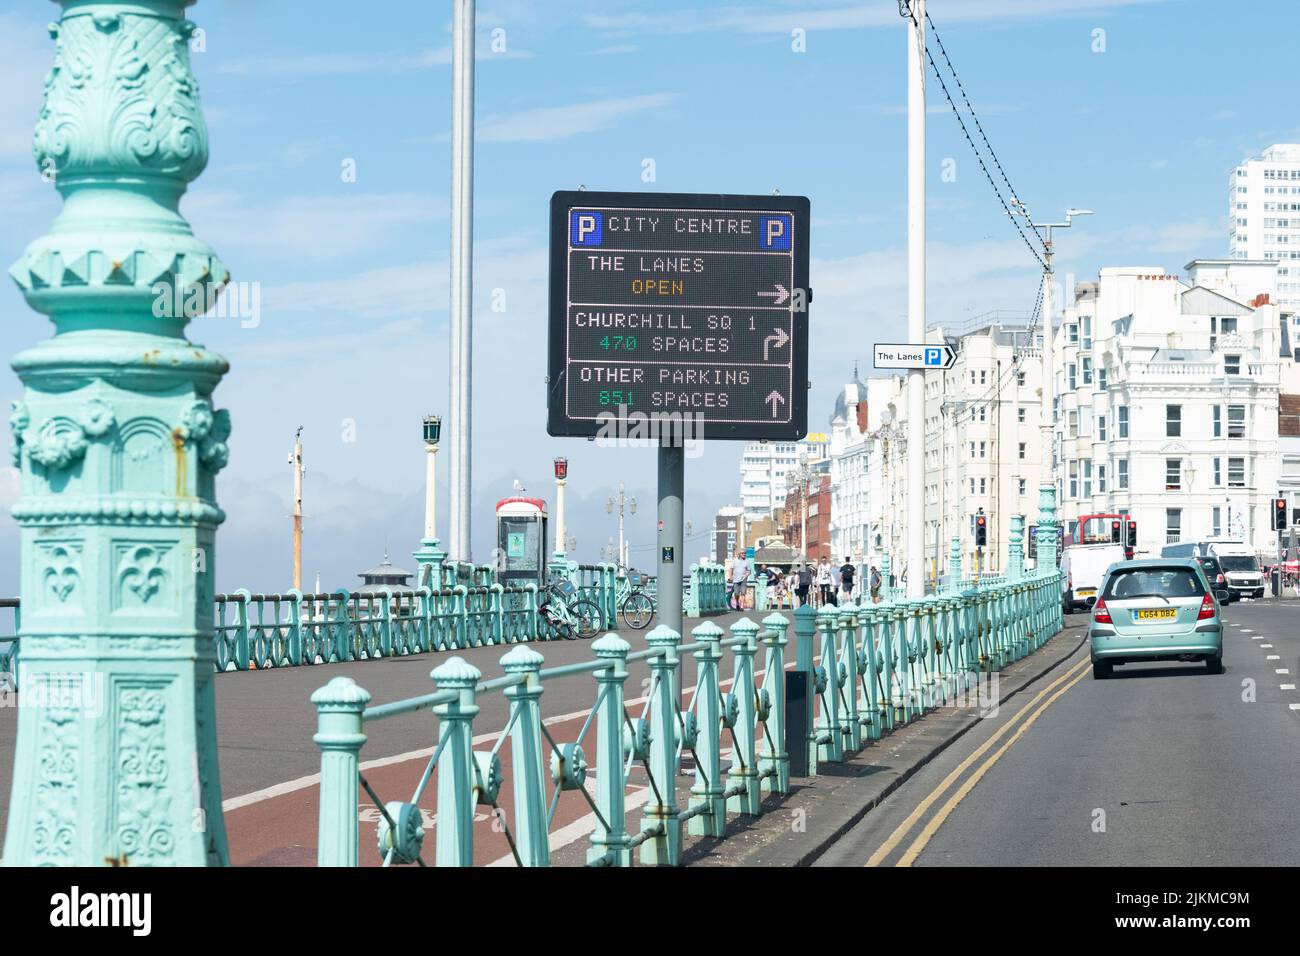 Aparcamiento en el centro de la ciudad de Brighton - The Lanes, Churchill Square, señal - Brighton, Inglaterra, Reino Unido Foto de stock